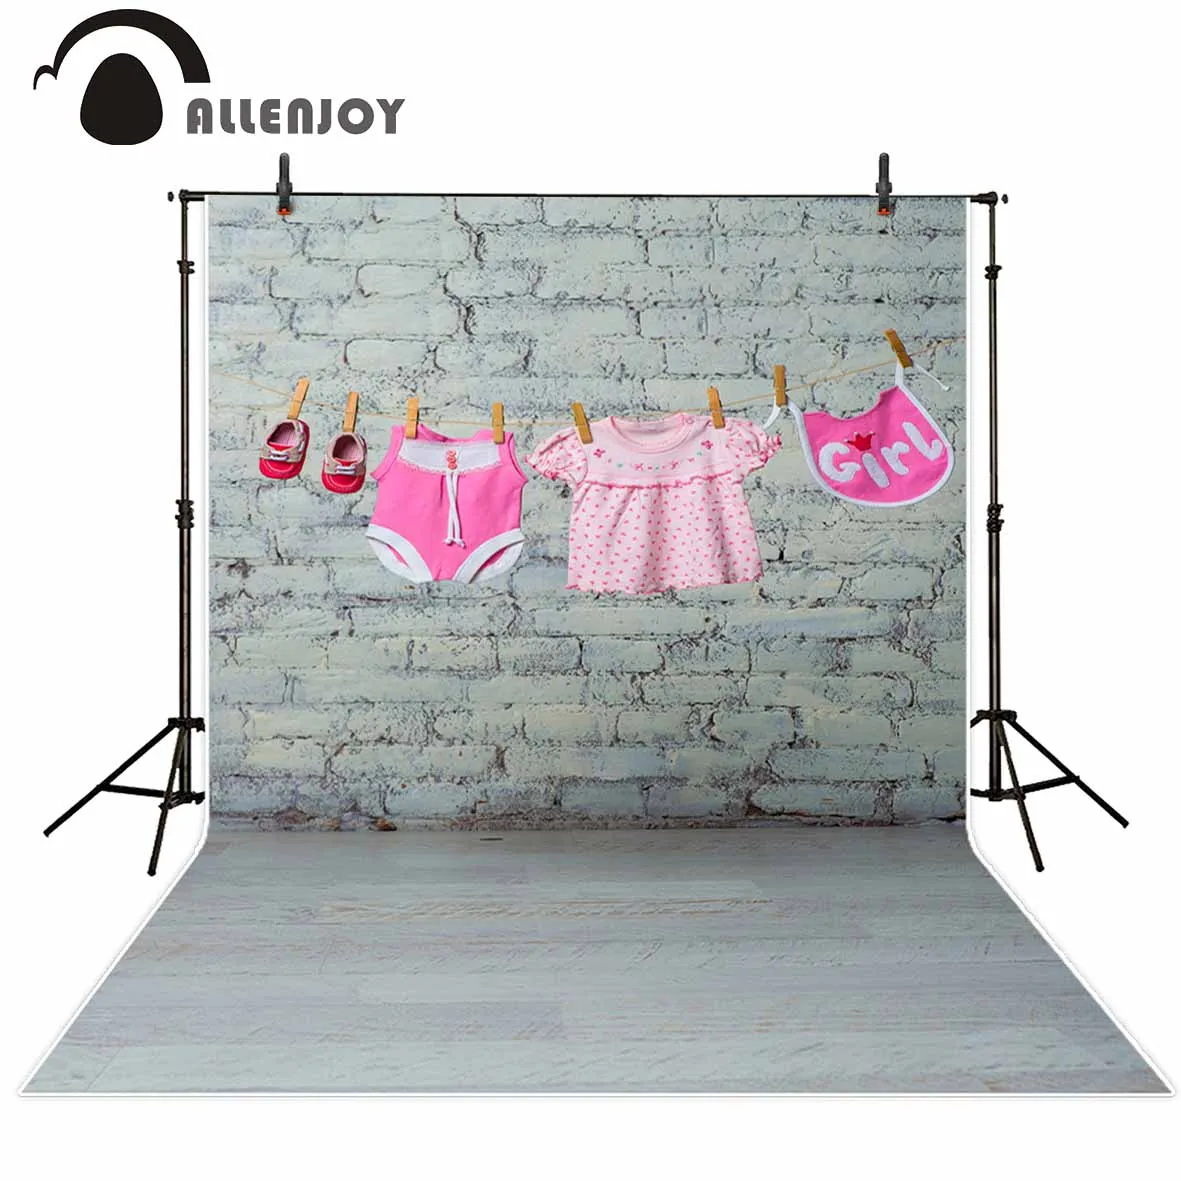 Allenjoy розовый комбинезон для маленьких девочек платье на лямках и красные туфли сухие на веревке на фоне белой кирпичной стены